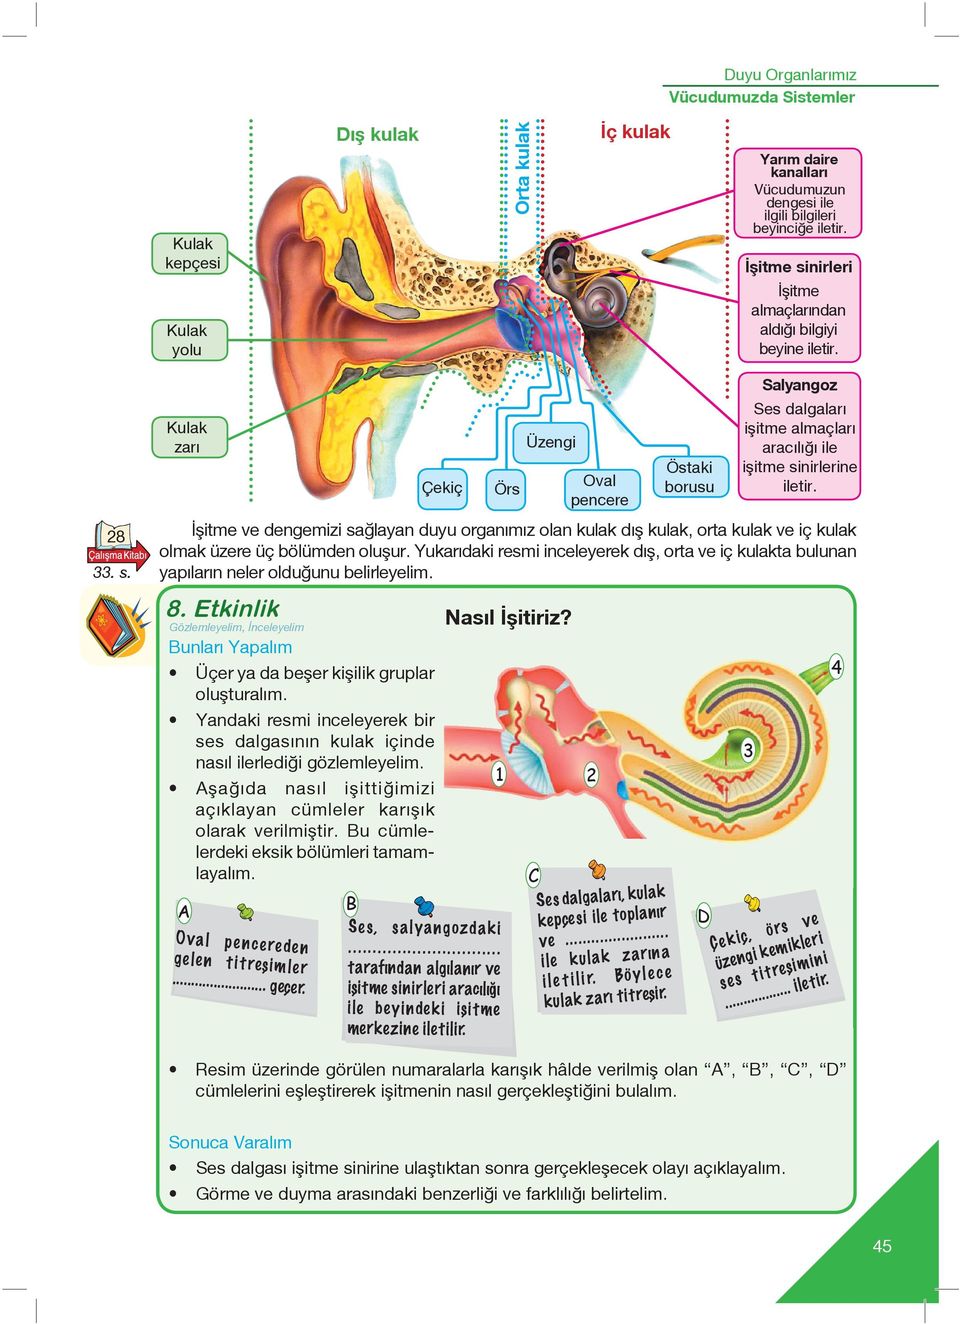 şitme ve dengemizi sağlayan duyu organımız olan kulak d fl kulak, orta kulak ve iç kulak olmak üzere üç bölümden oluflur.